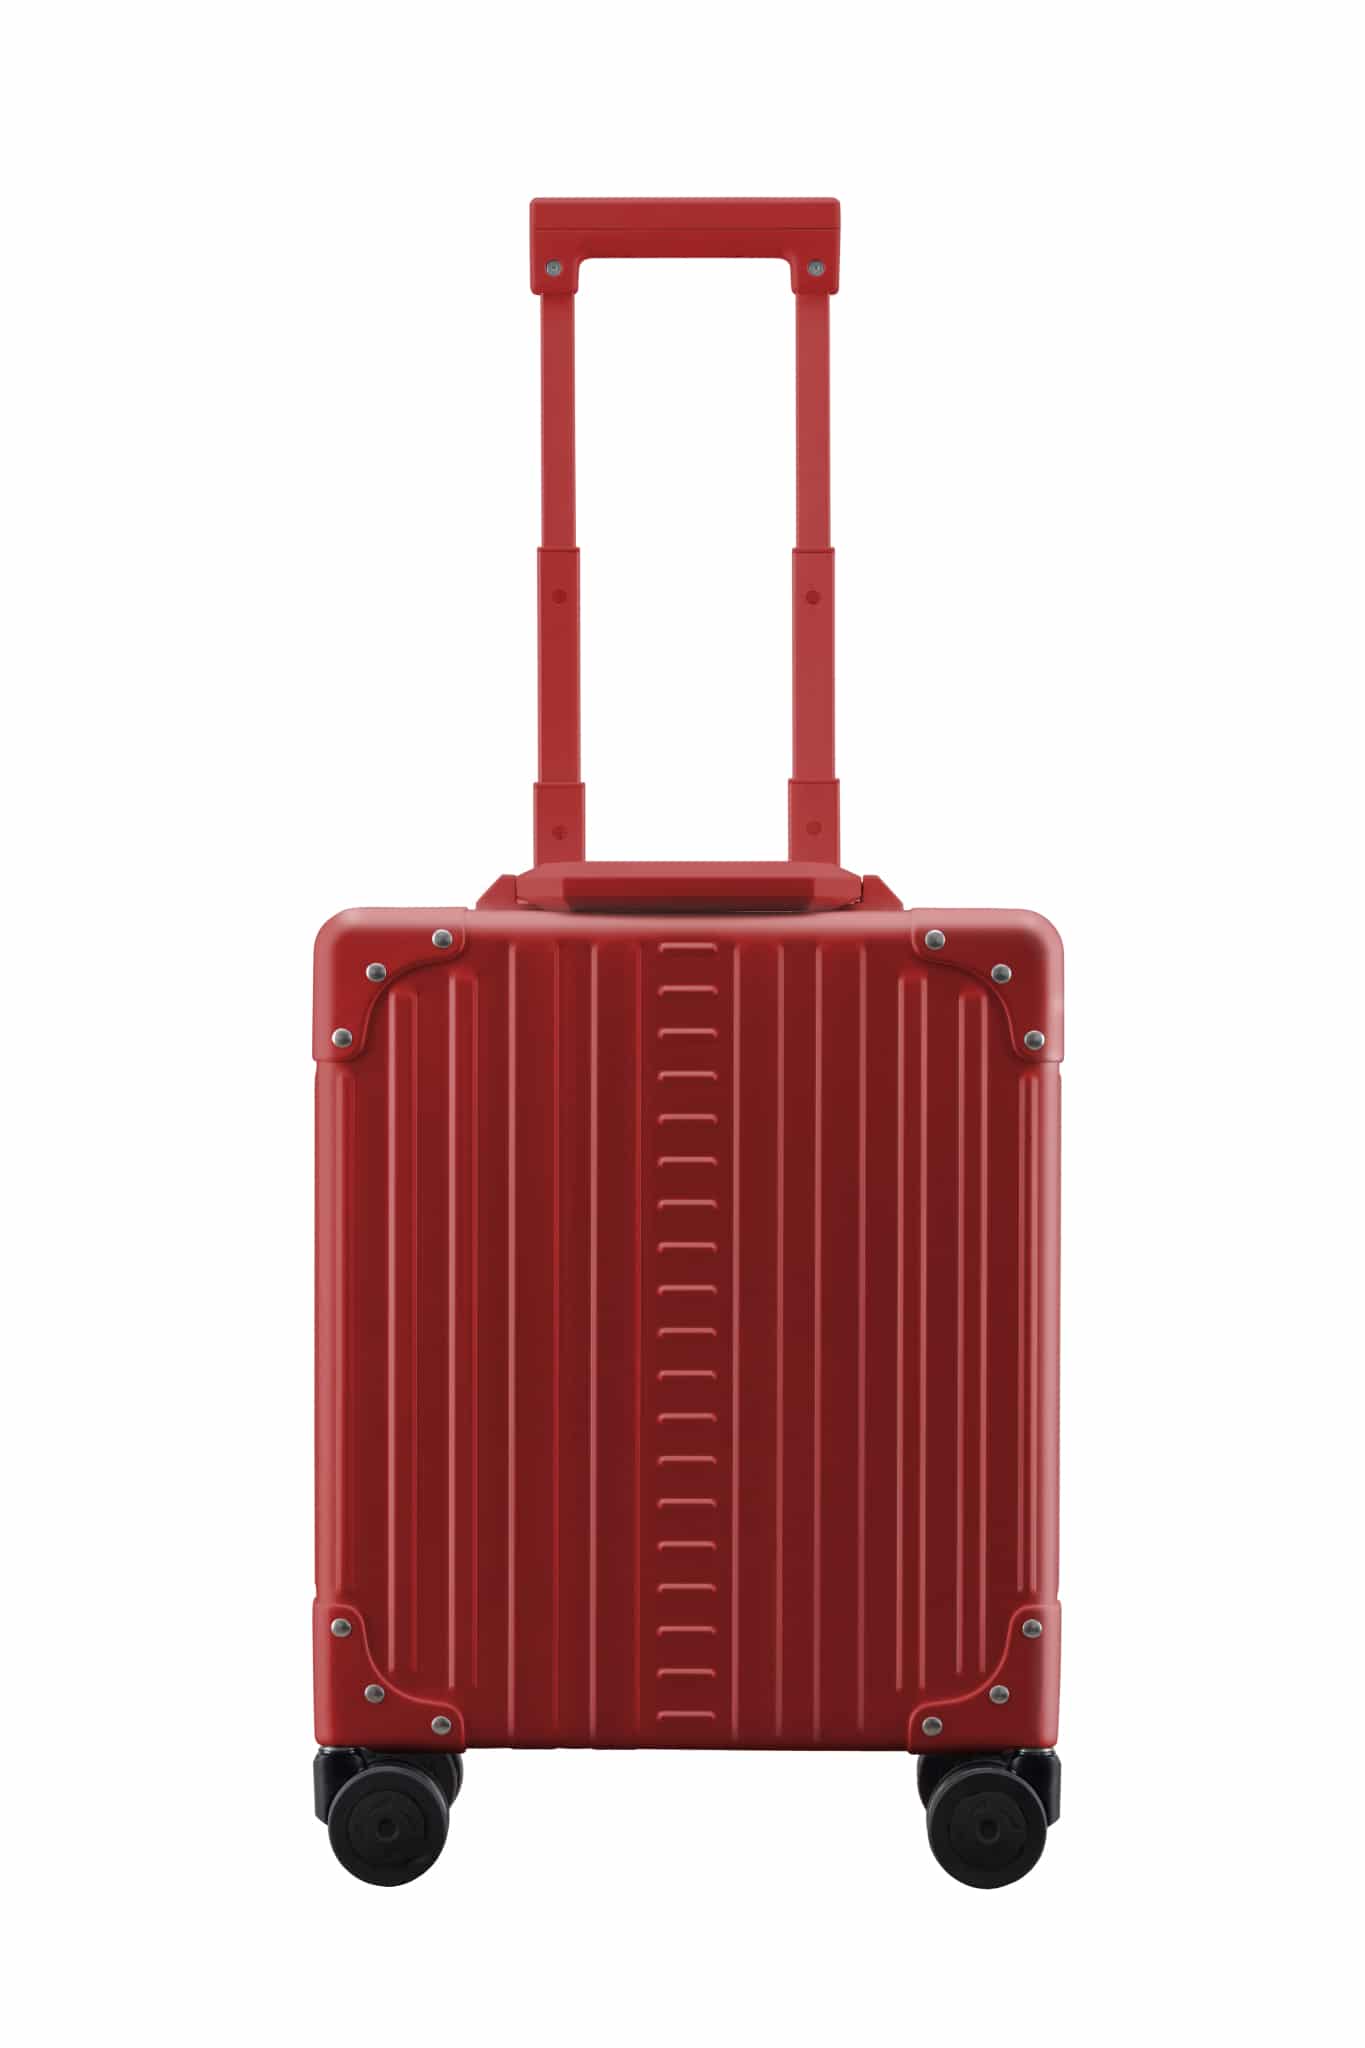 Red aluminum luggage